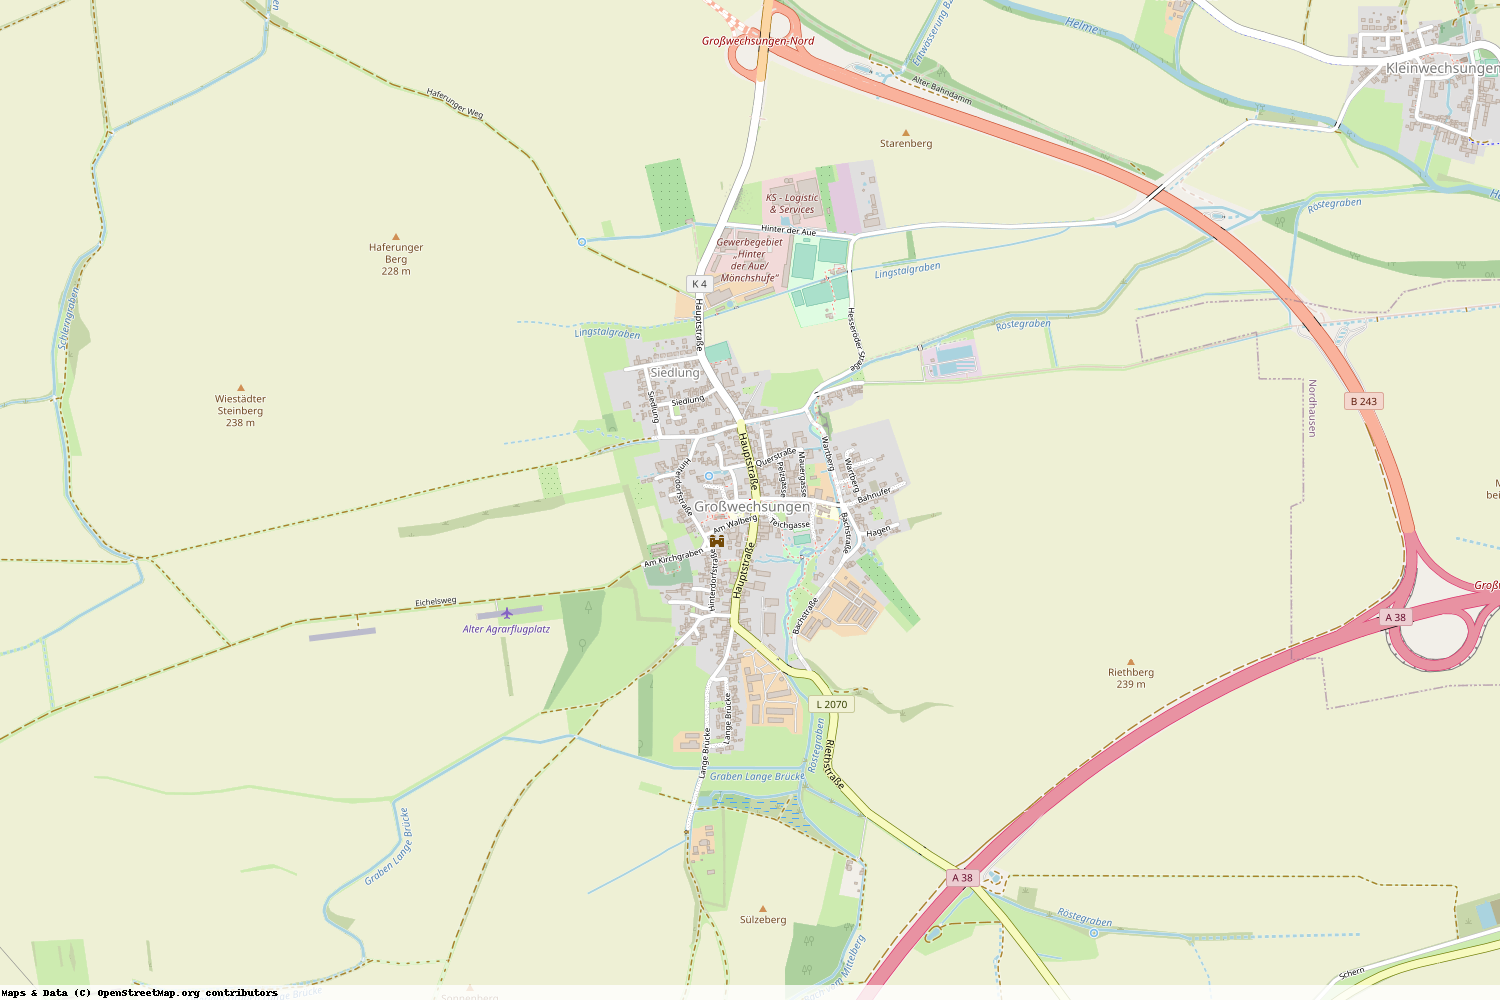 Ist gerade Stromausfall in Thüringen - Nordhausen - Werther?